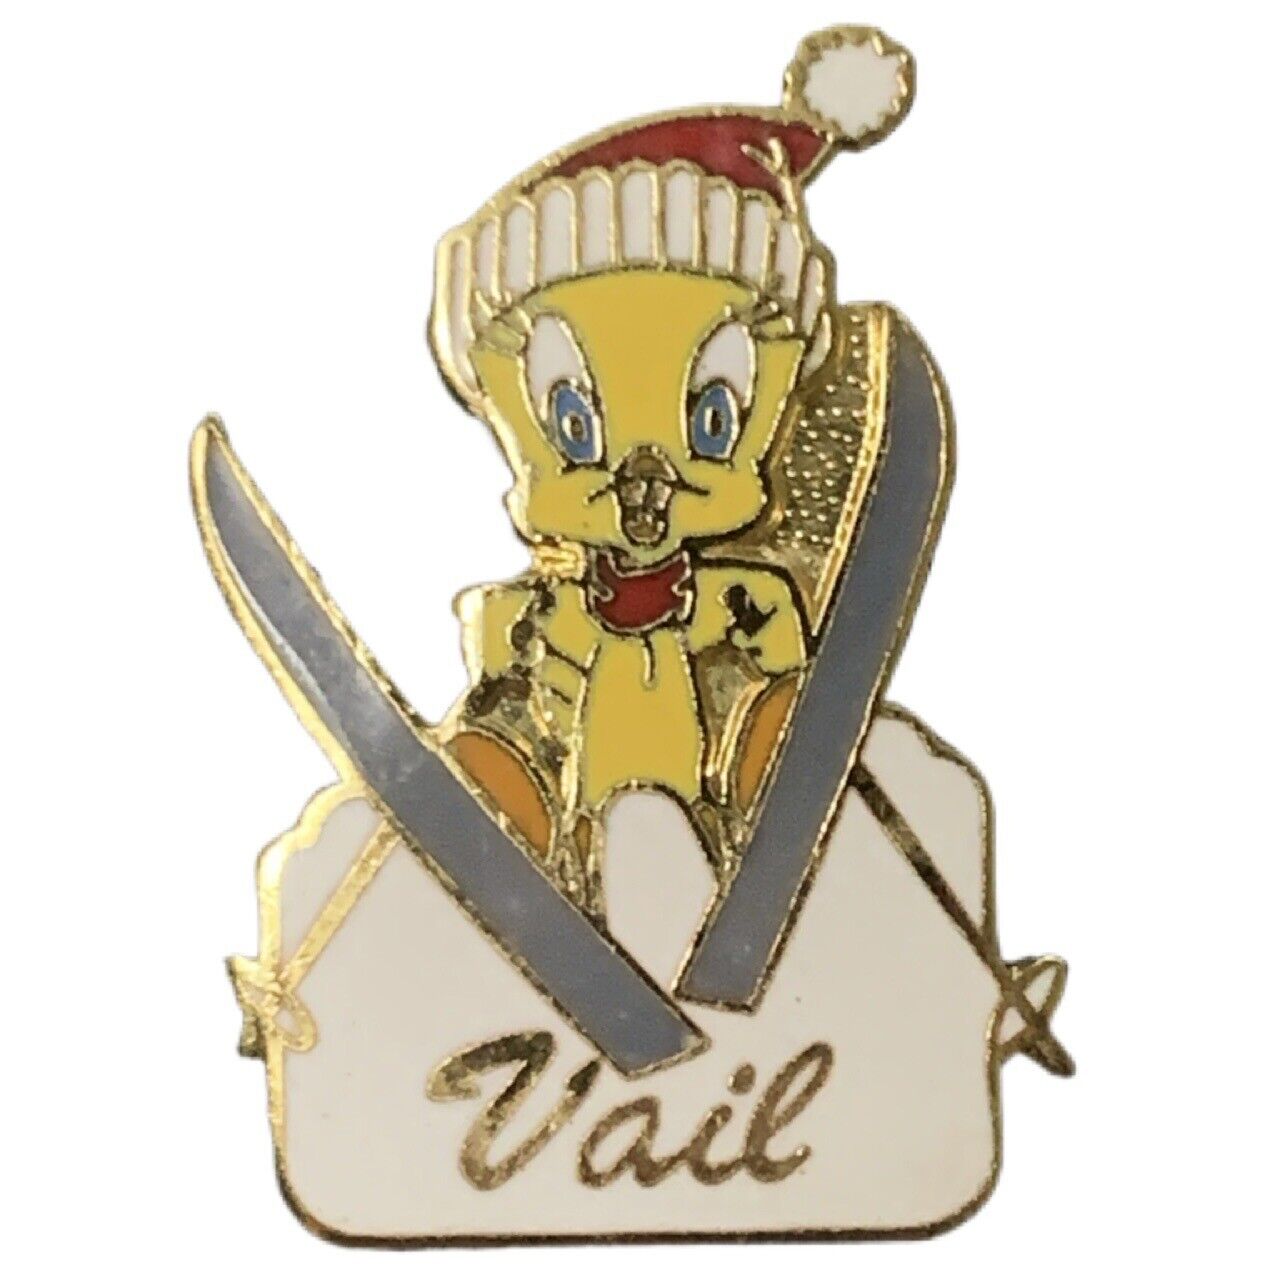 Vintage Vail Ski Resort Tweety Bird Travel Souvenir Pin